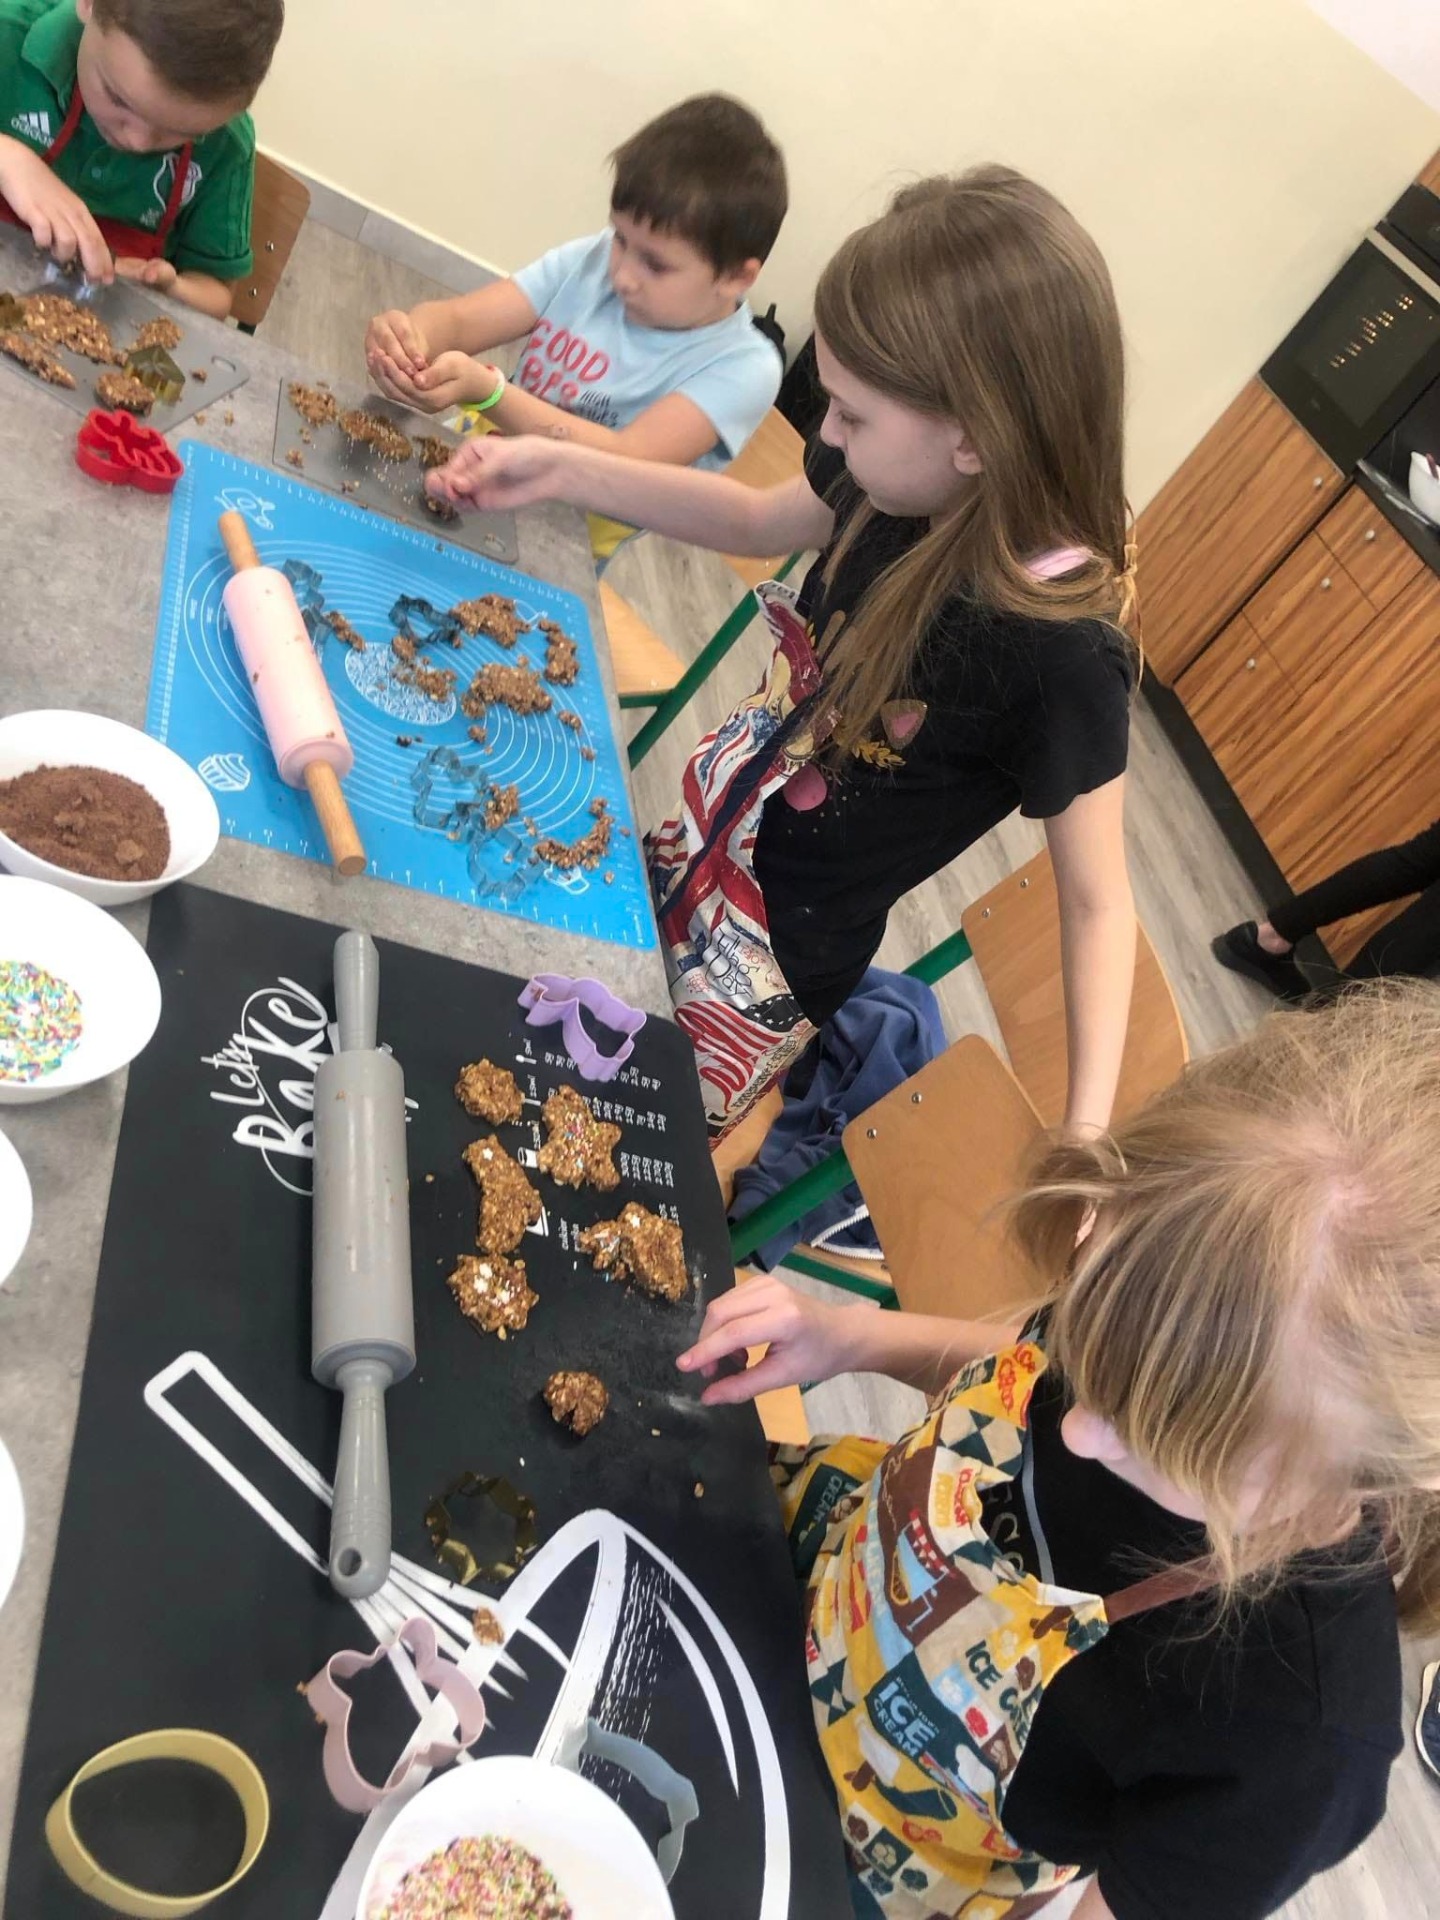 Na zdjęciu widzimy grupę dzieci zaangażowanych w wspólne pieczenie ciastek. Siedzą przy stole, a przed nimi rozłożone są różne narzędzia i składniki do wypieku.